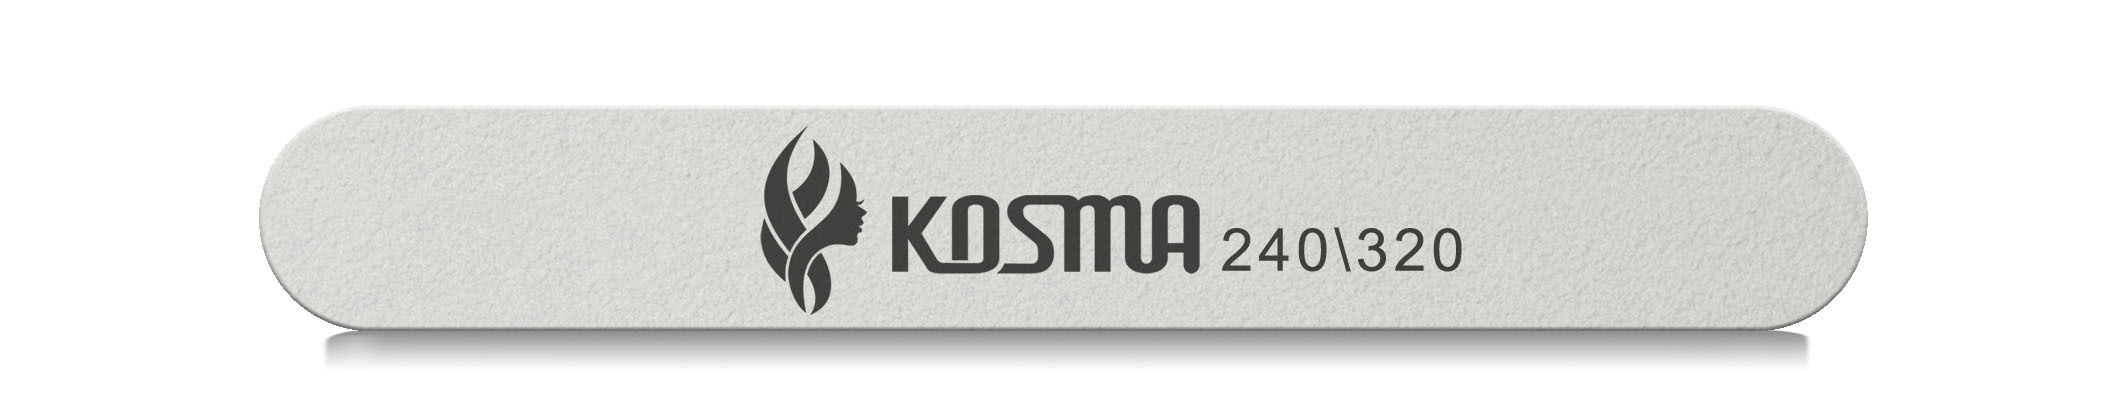 Купить Пилка KOSMA прямая маленькая белая 240/320 пластиковая основа 1 шт.